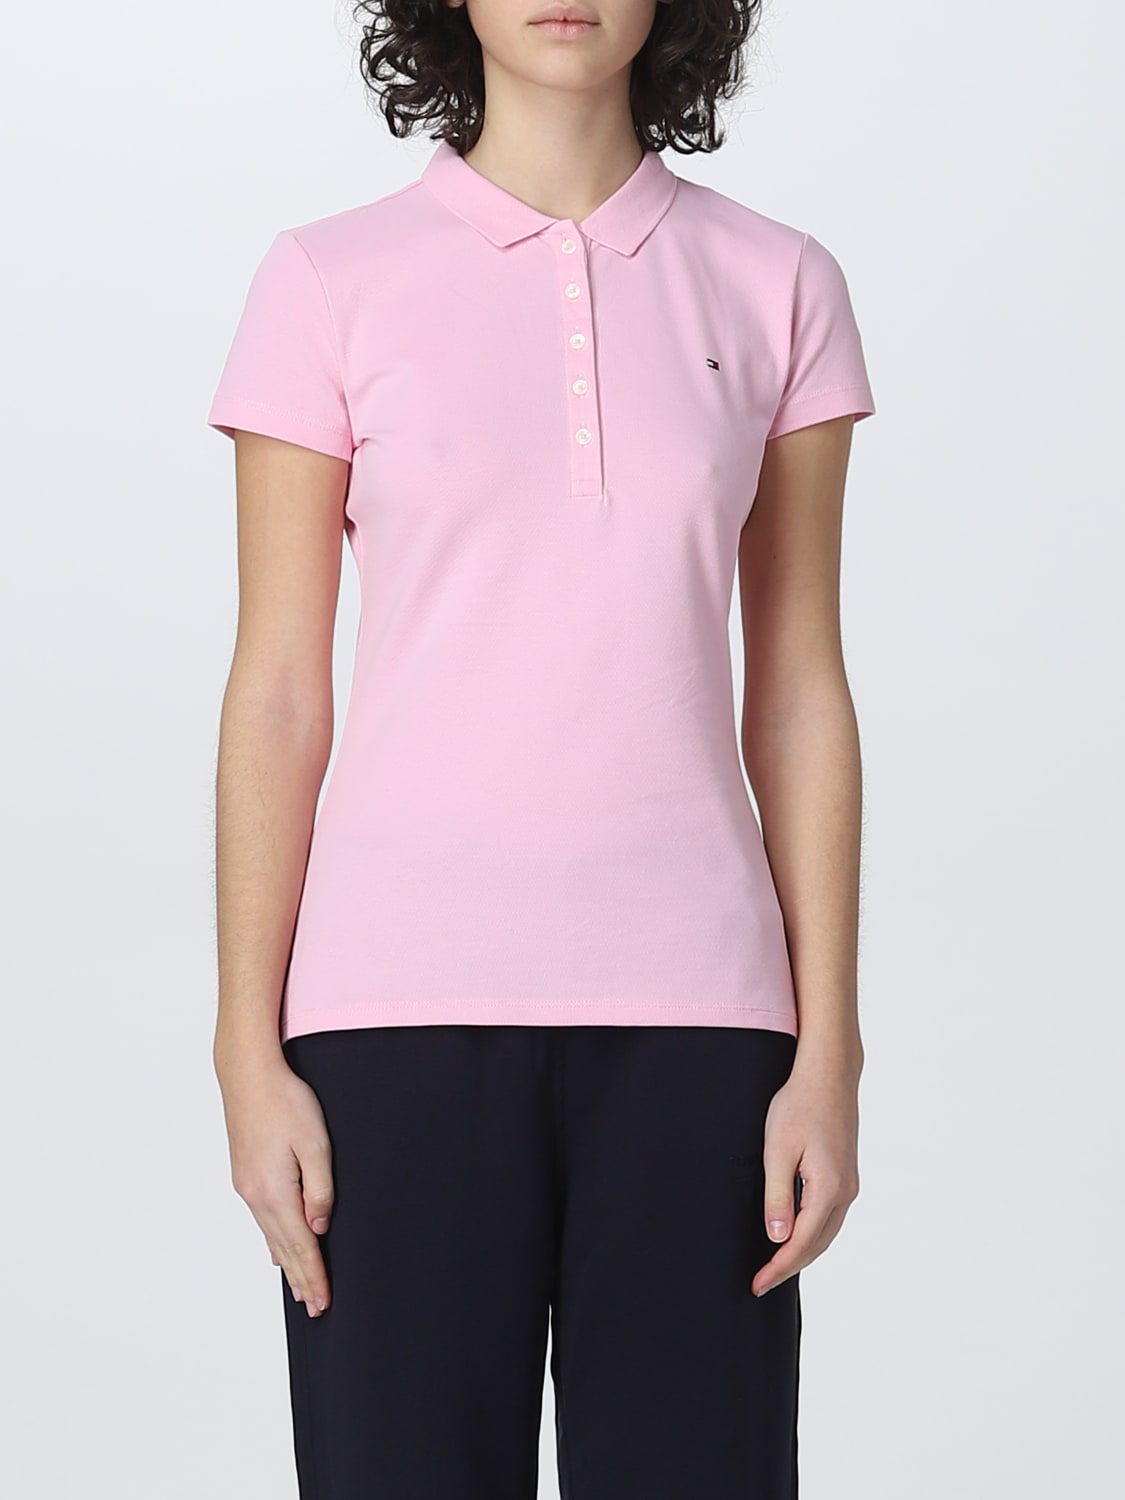 Hoes rotatie gezond verstand TOMMY HILFIGER: polo shirt for woman - Pink | Tommy Hilfiger polo shirt  WW0WW27947 online on GIGLIO.COM